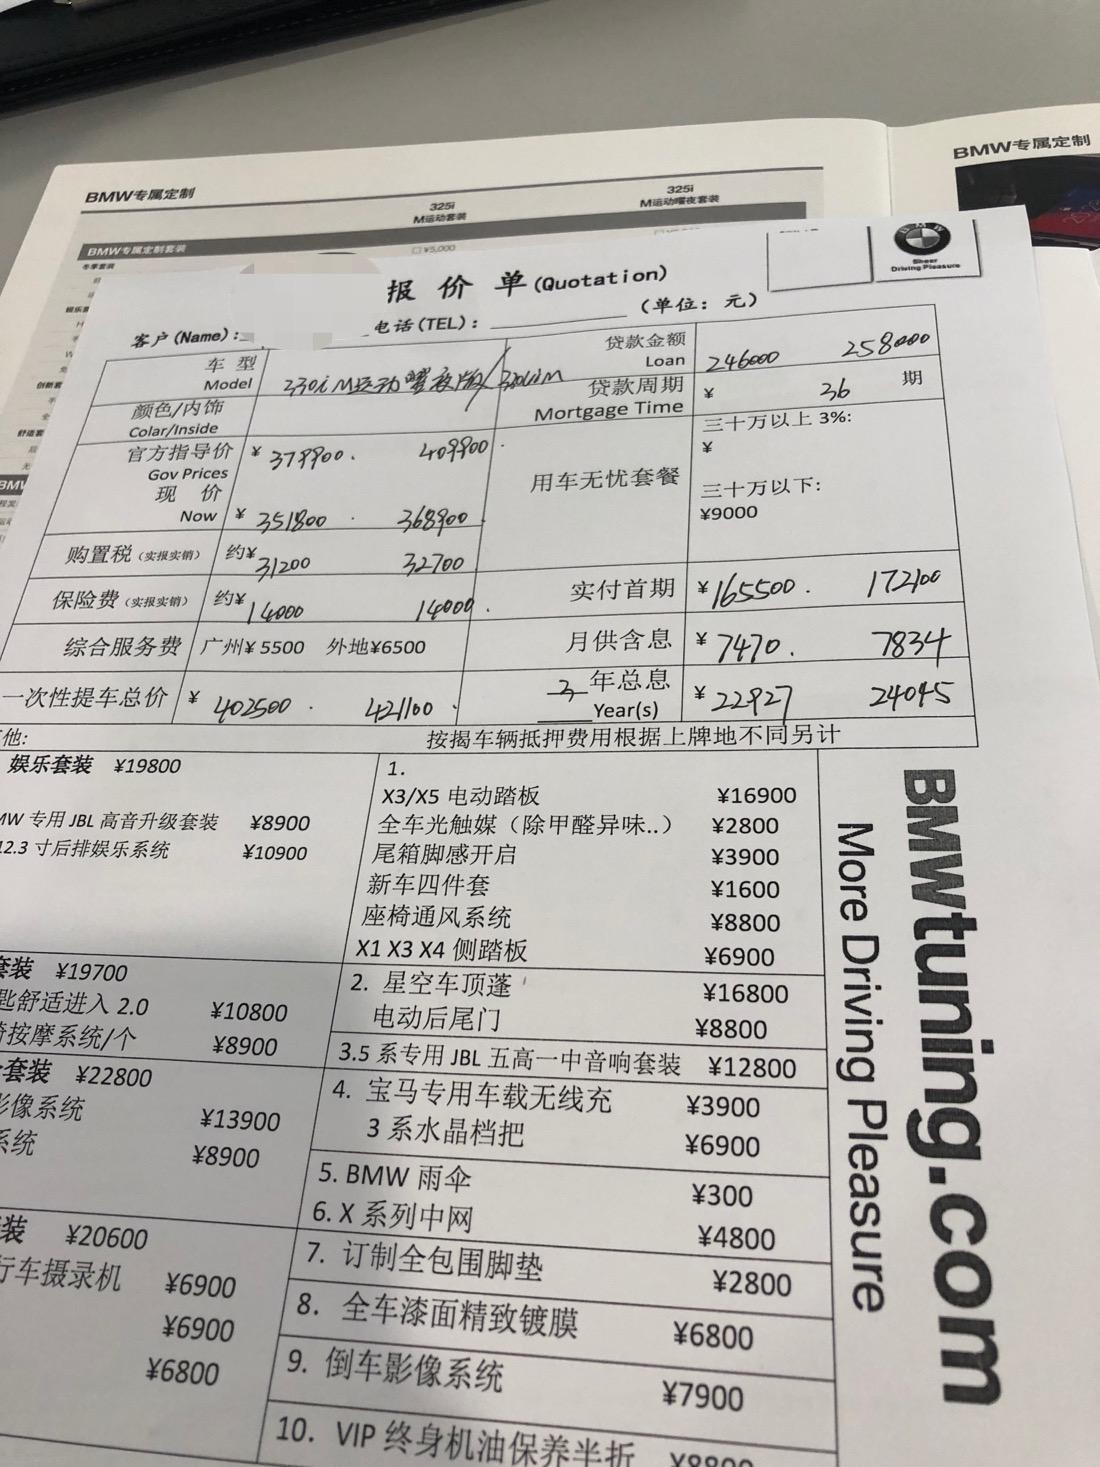 宝马3系 广州地区，330li谈的最终全款落地价格是41.5万，不知道贵不贵，贷款差不多43万多了，全款只有一个综合服务